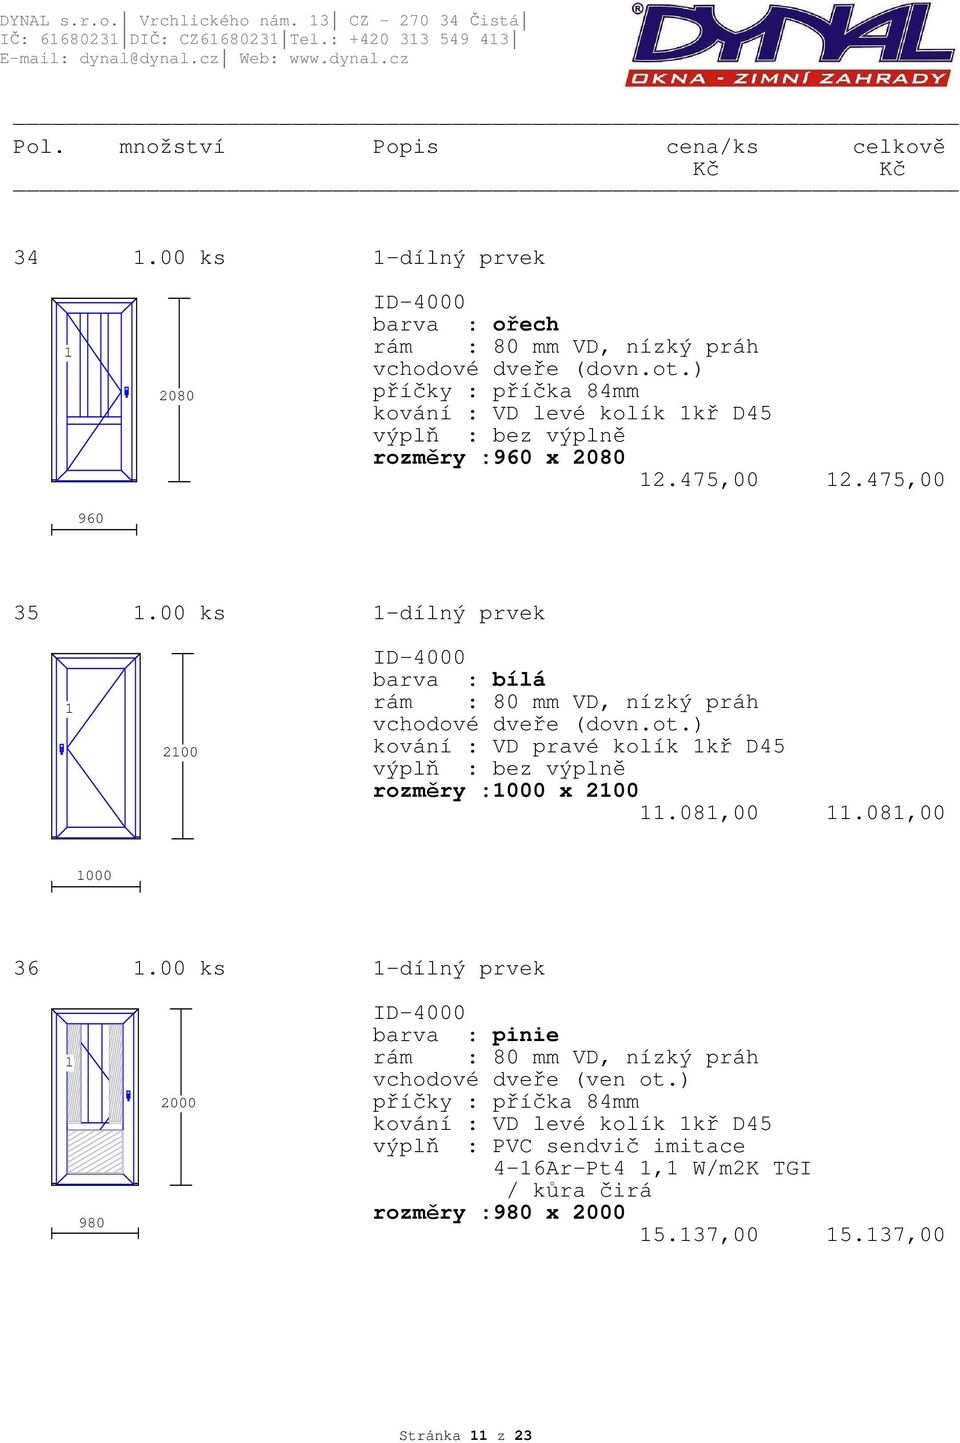 475,00 2.475,00 960 35.00 ks -dílný prvek 200 ID-4000 VD, nízký práh vchodové dveře (dovn.ot.) kování : VD pravé kolík kř D45 rozměry :000 x 200.08,00.08,00 000 36.